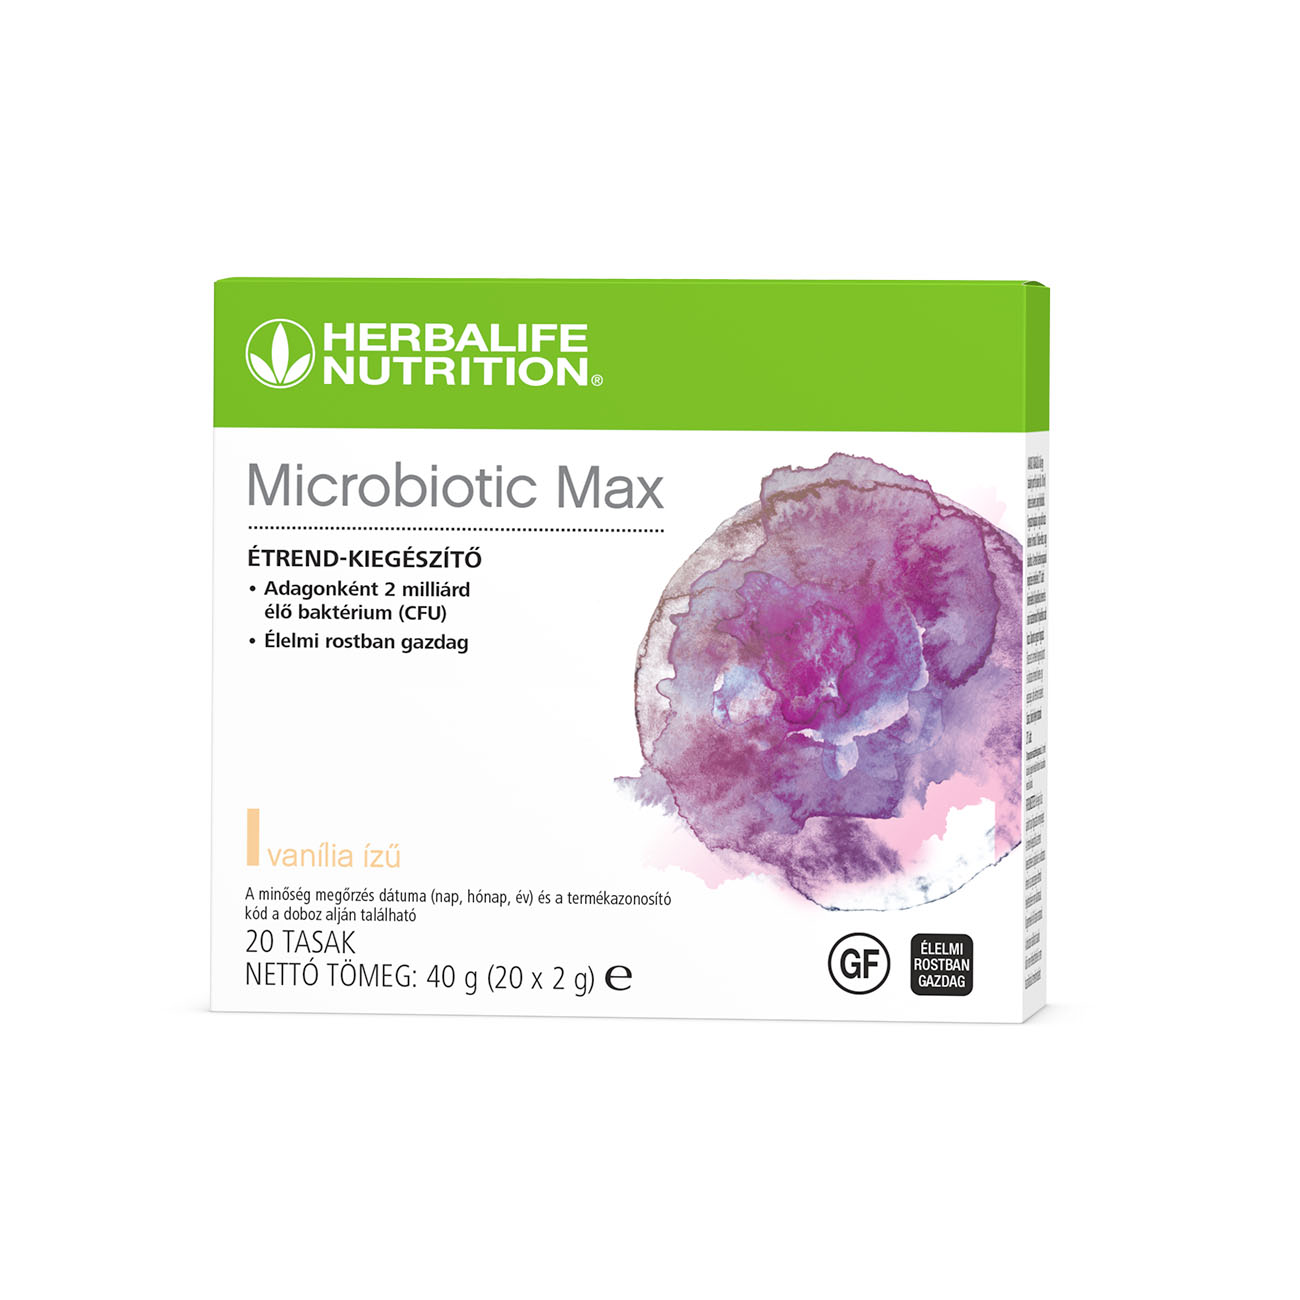 Microbiotic Max, por formájú étrend-kiegészítő, amely probiotikumok és prebiotikus rostok kombinációjával készült.